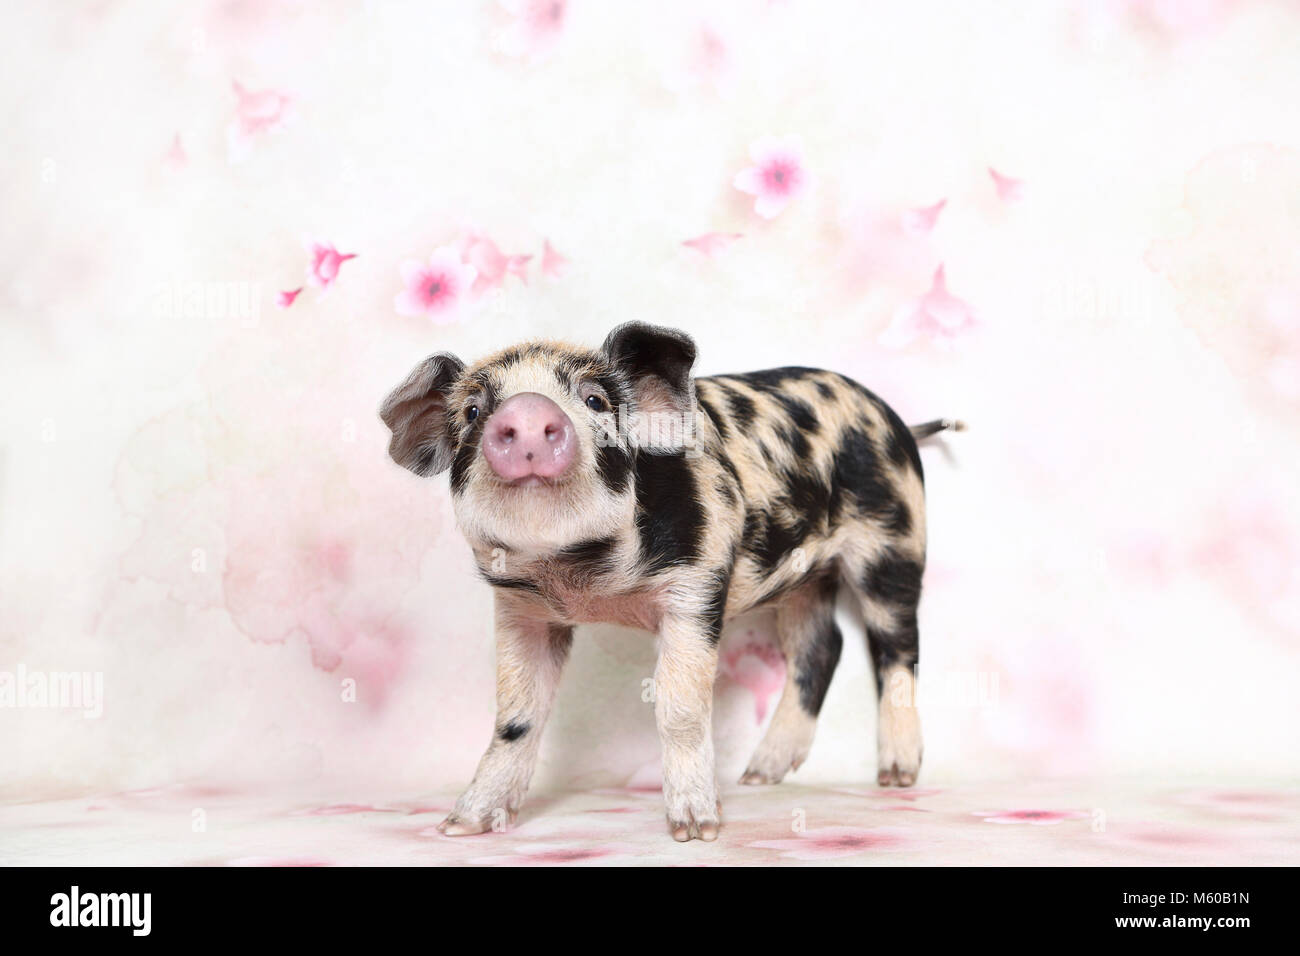 Porc domestique, Turopolje x ?. Porcinet (4 semaines), comité permanent. Studio photo vu sur un fond blanc avec impression de fleurs. Allemagne Banque D'Images